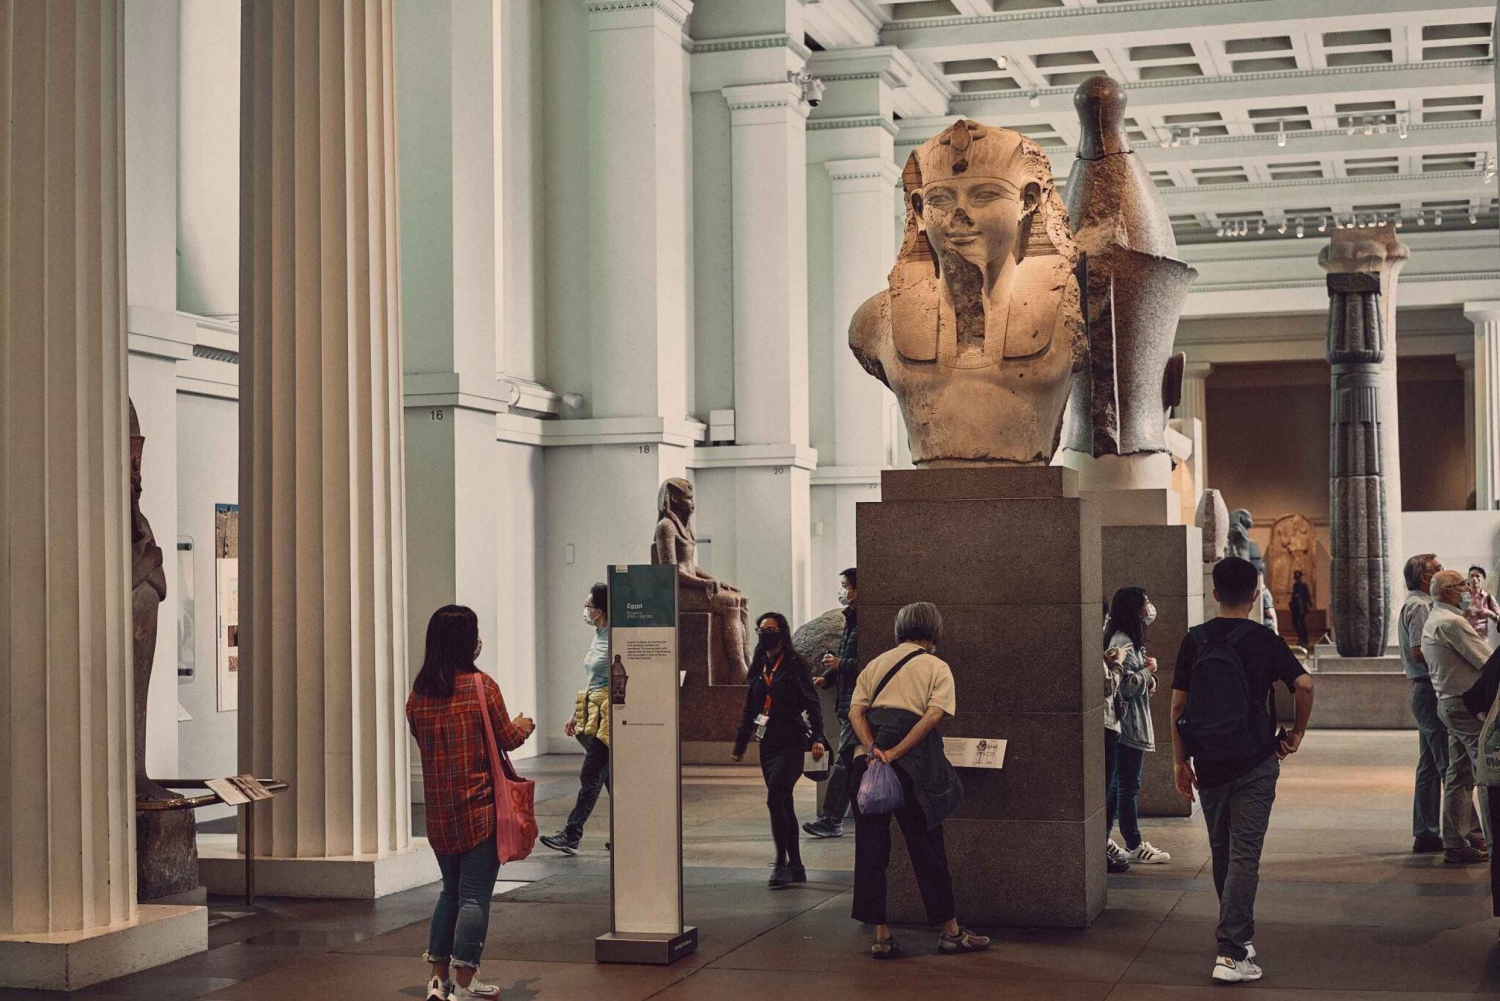 Audioguida del British Museum/National Gallery Txt NON incluso